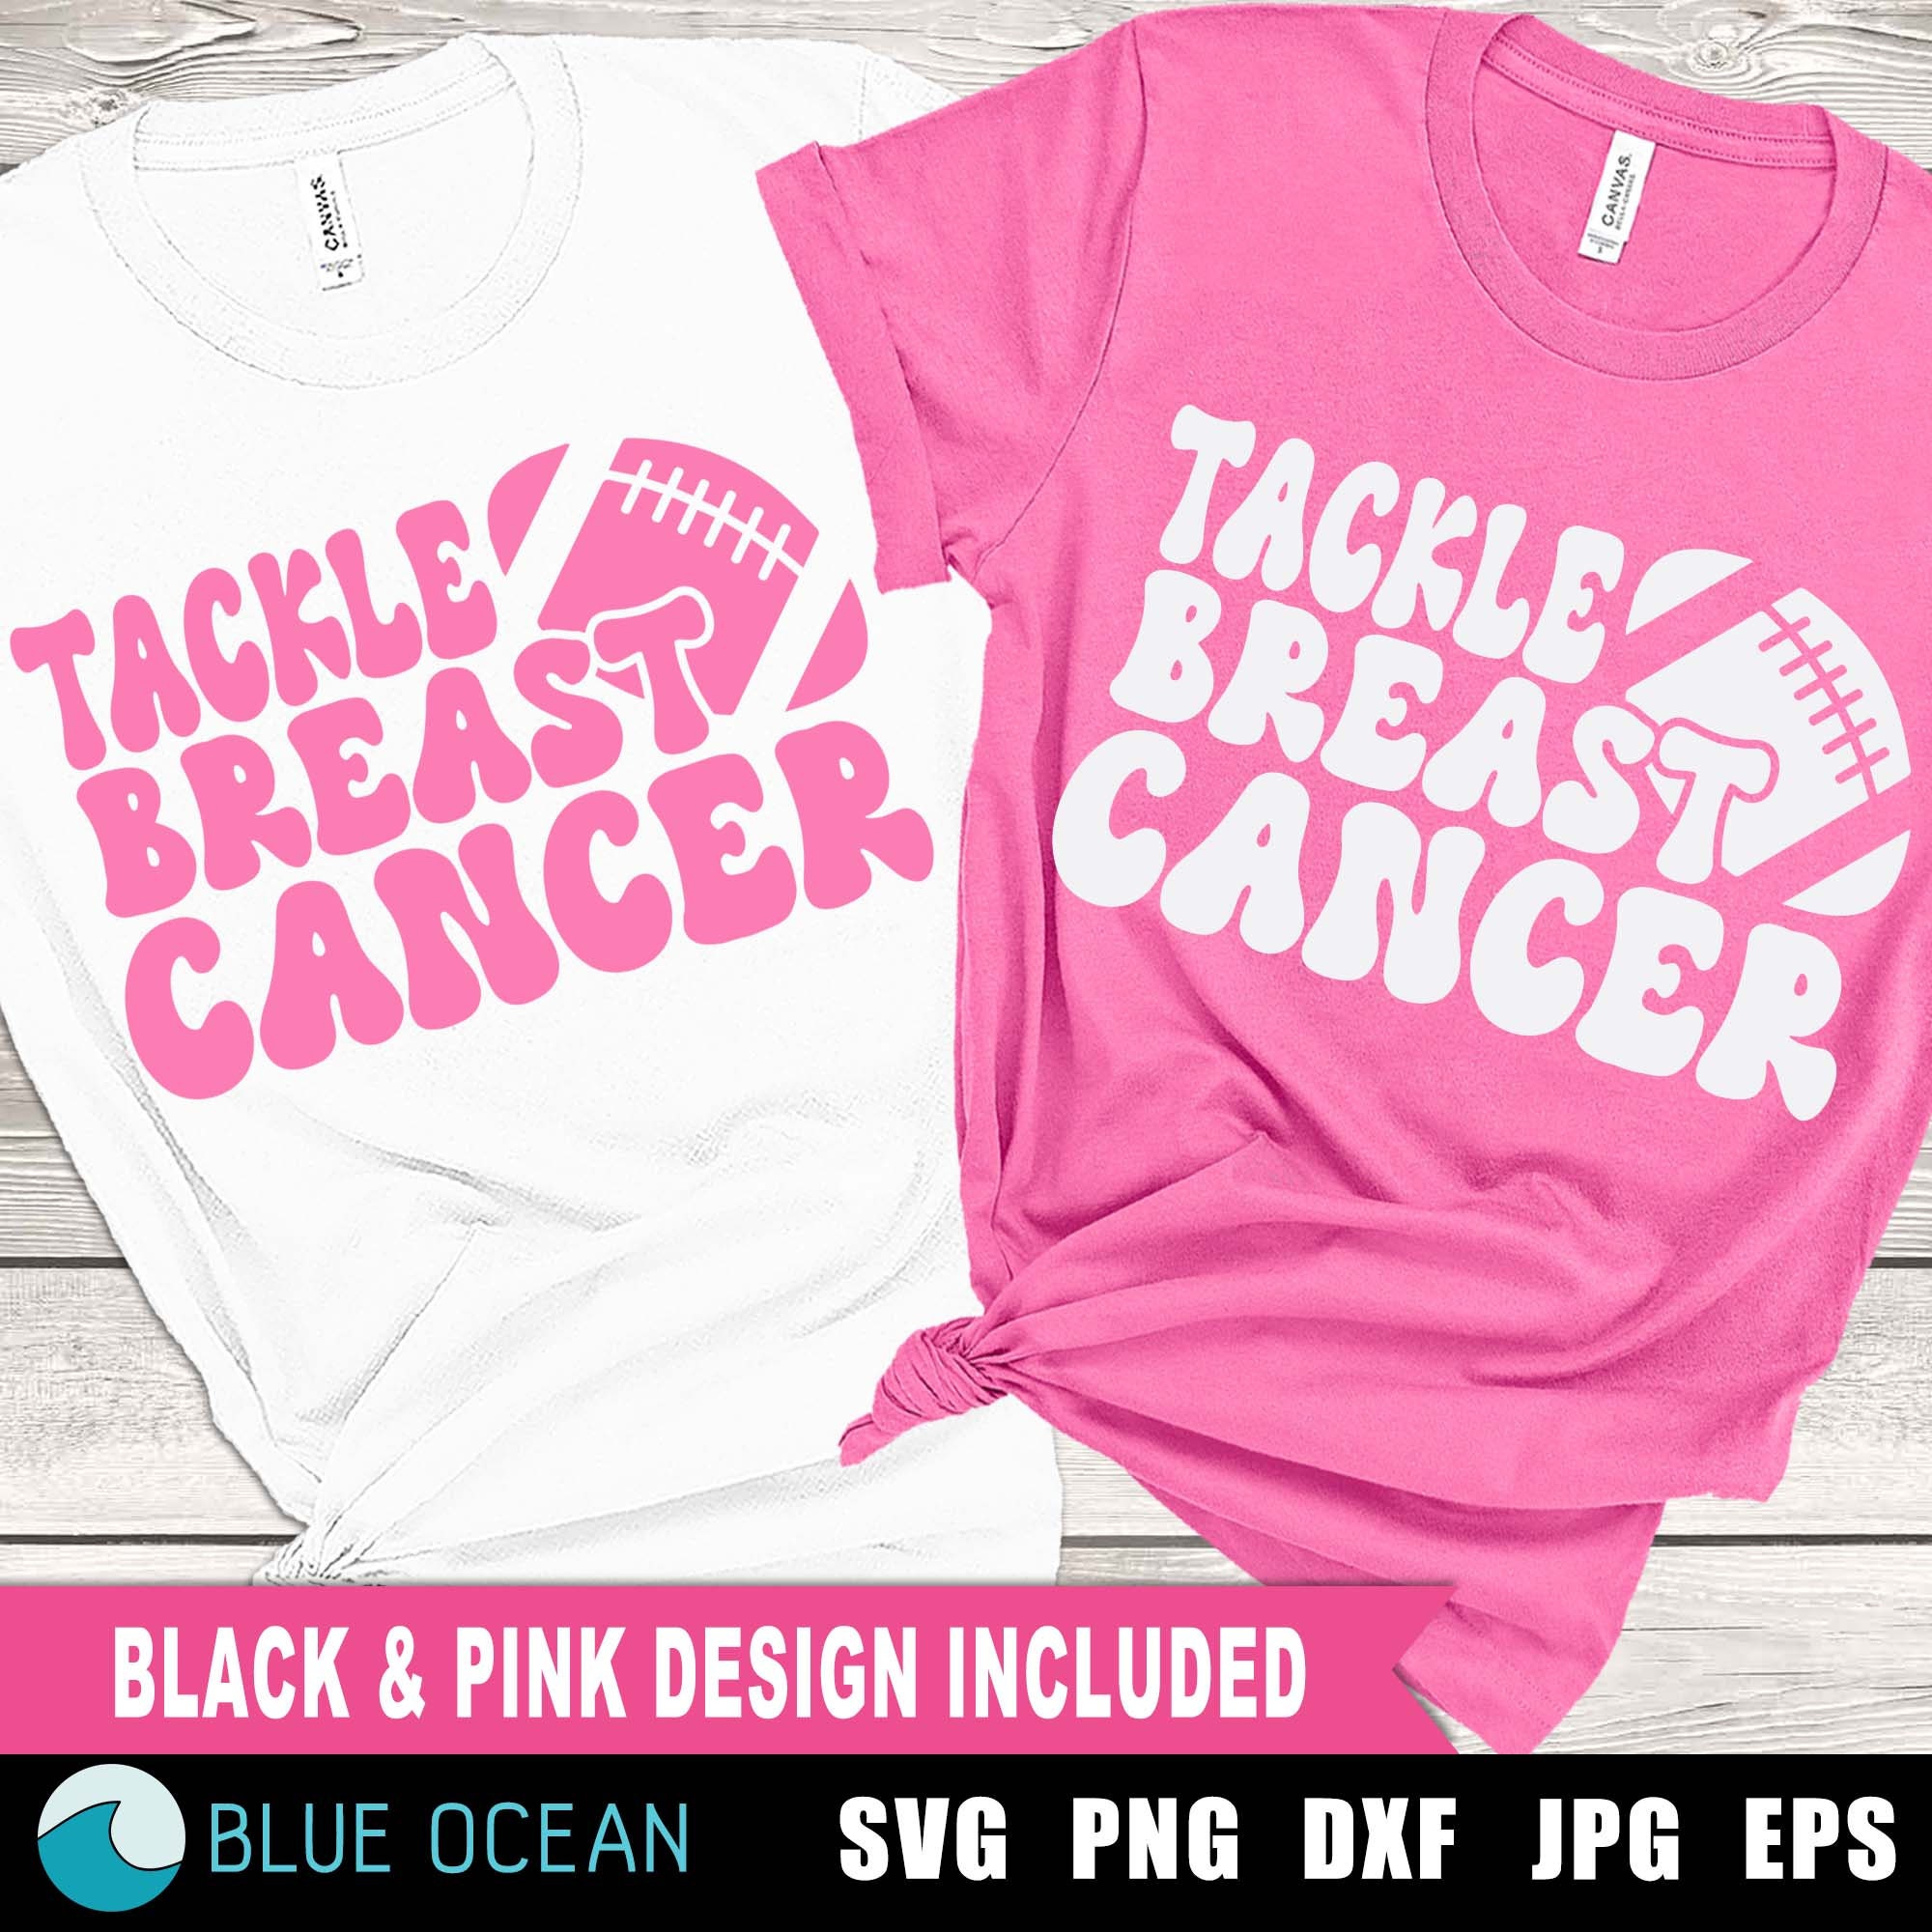 Baseball Tackle Breast Cancer Svg Awareness ribbon (362991)